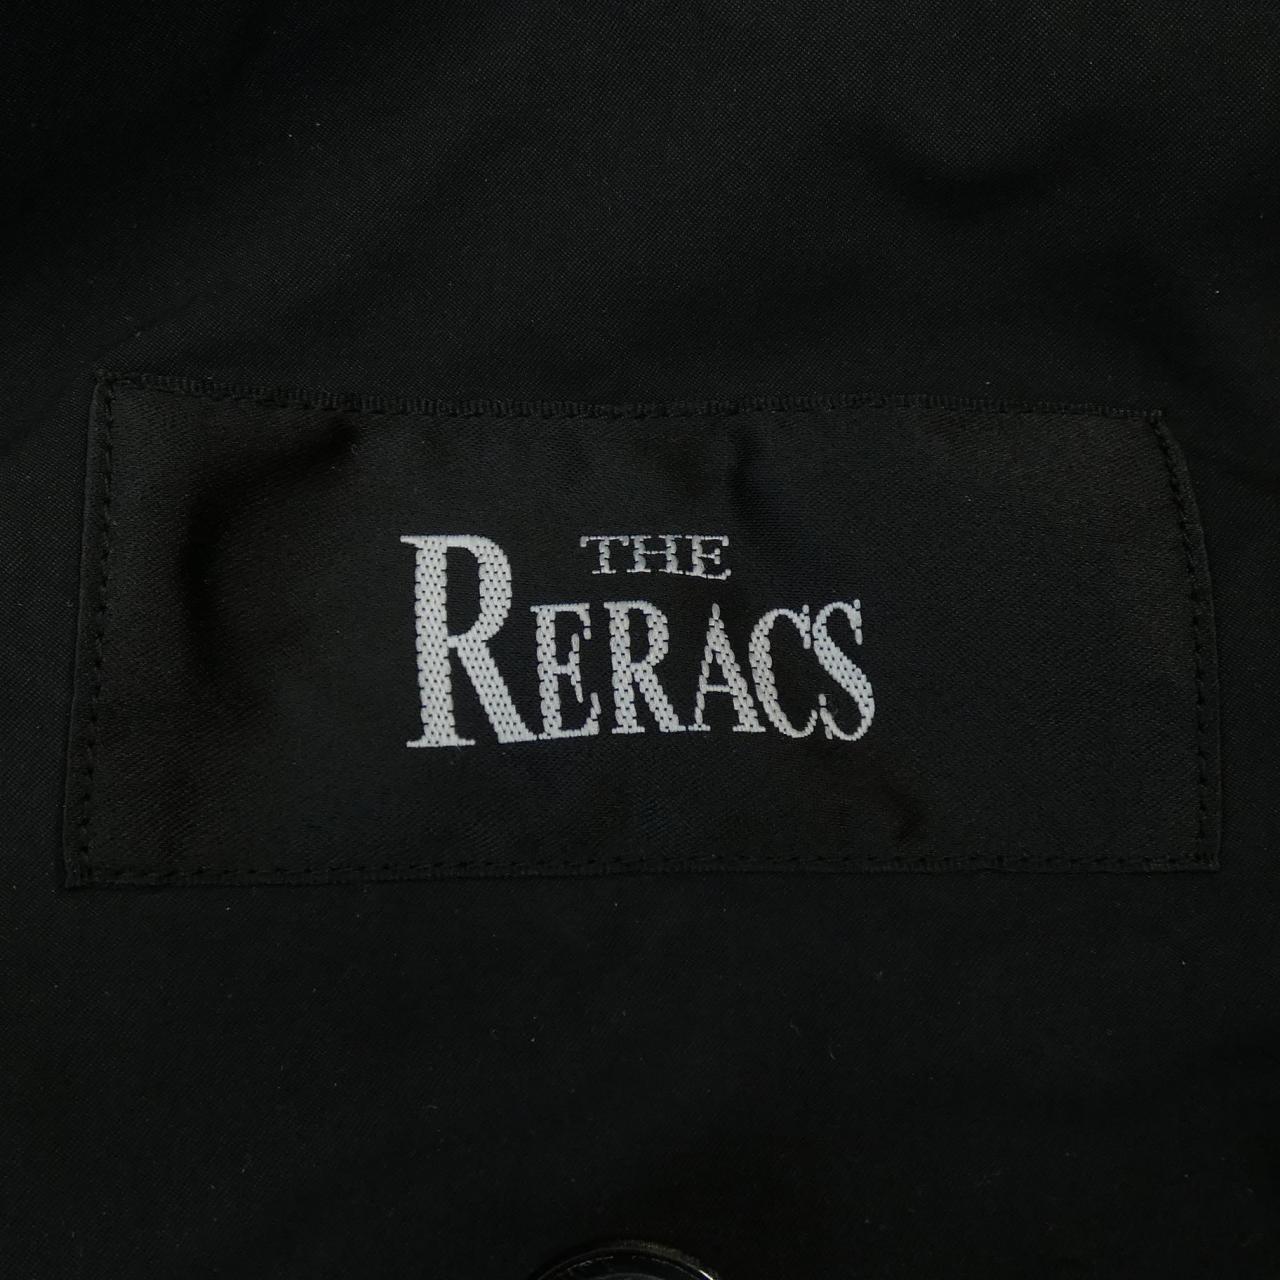 莎拉拉克THE RERACS夹克衫